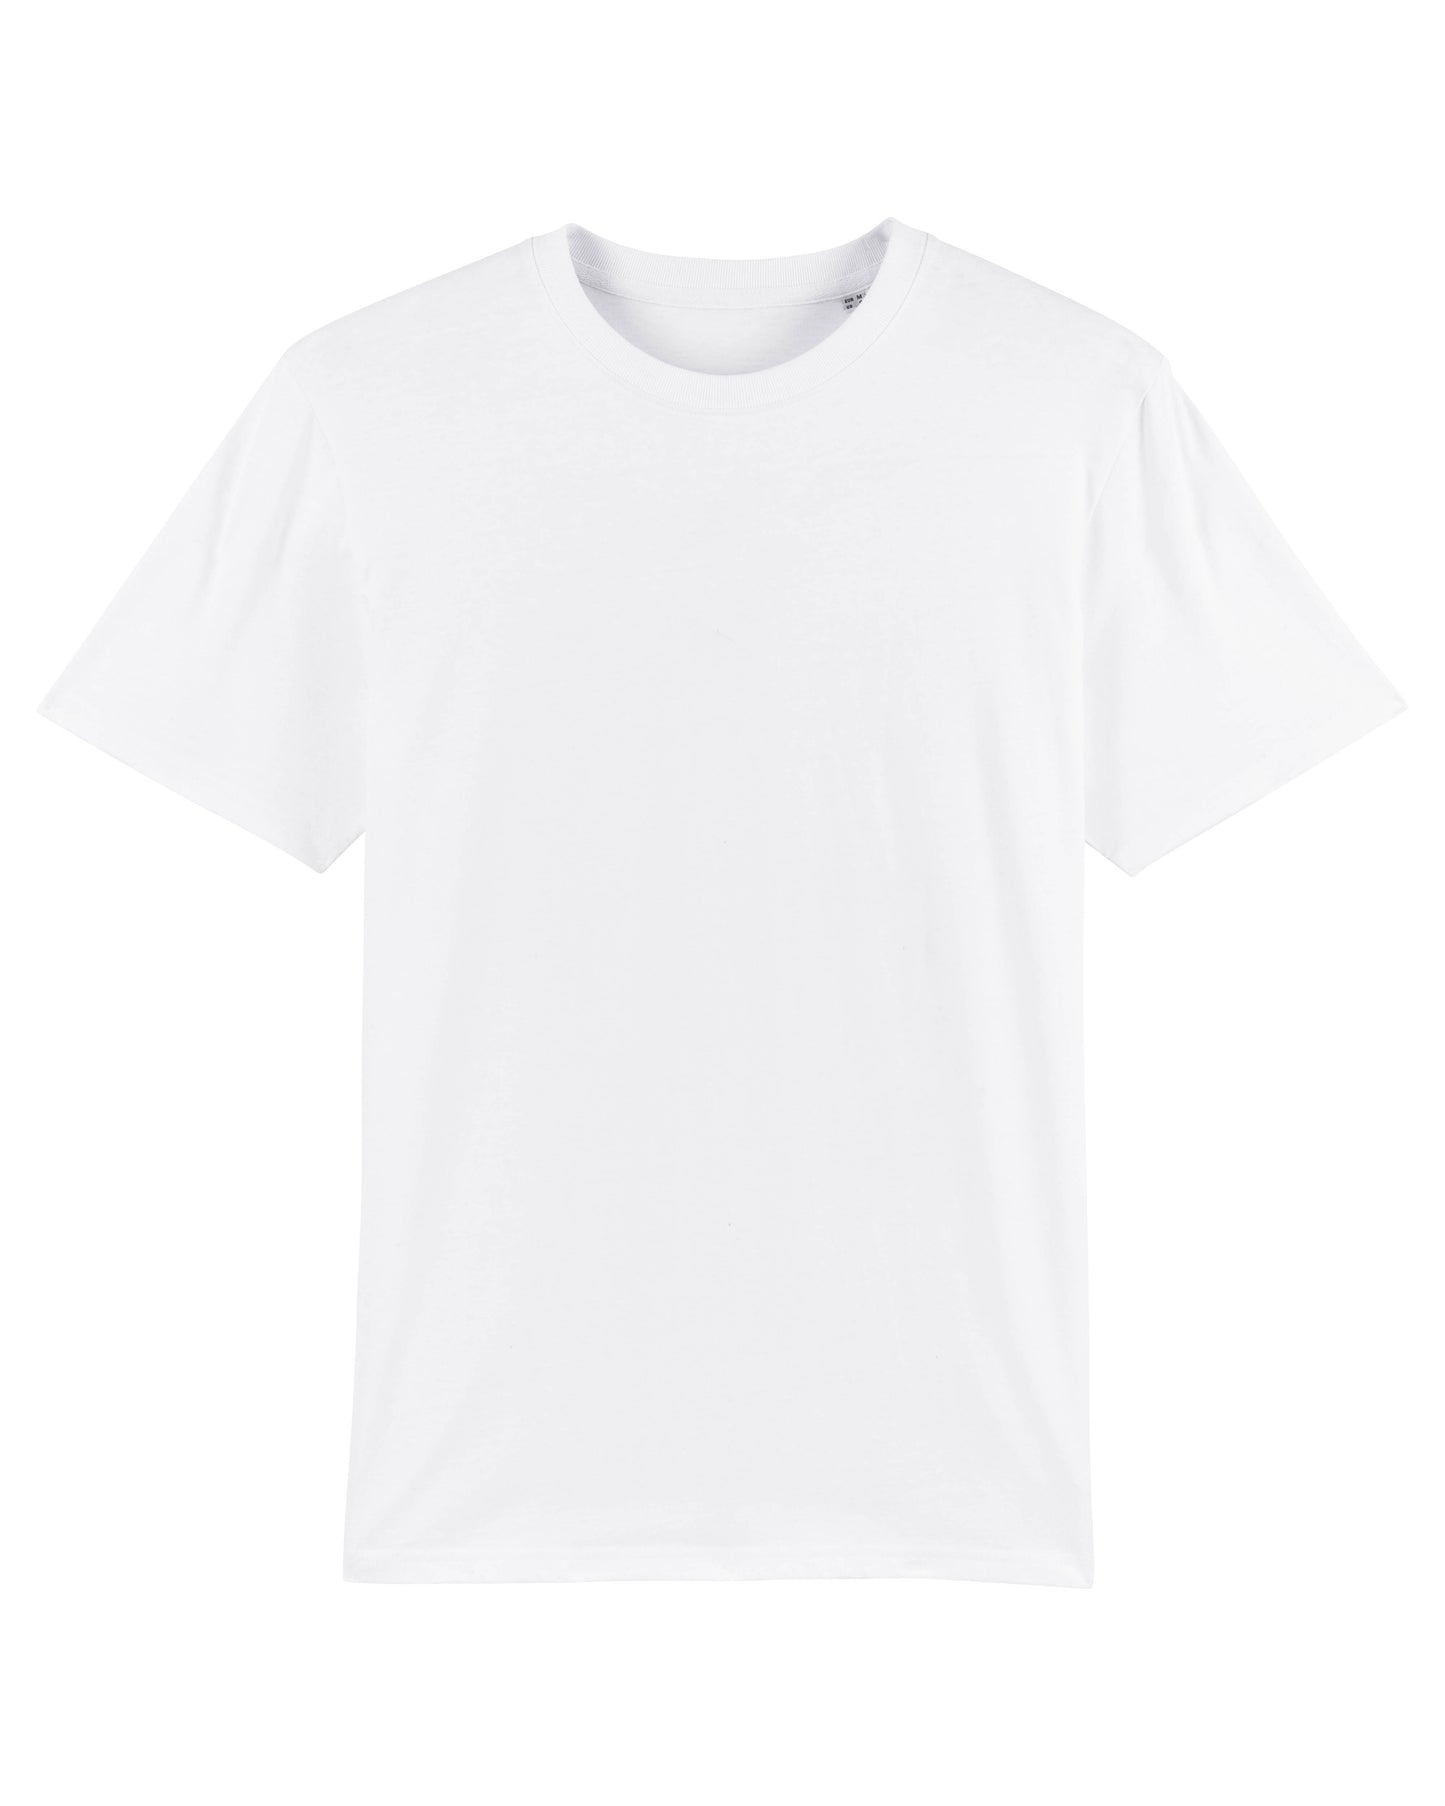 SPARKER | T-shirt épais en coton bio